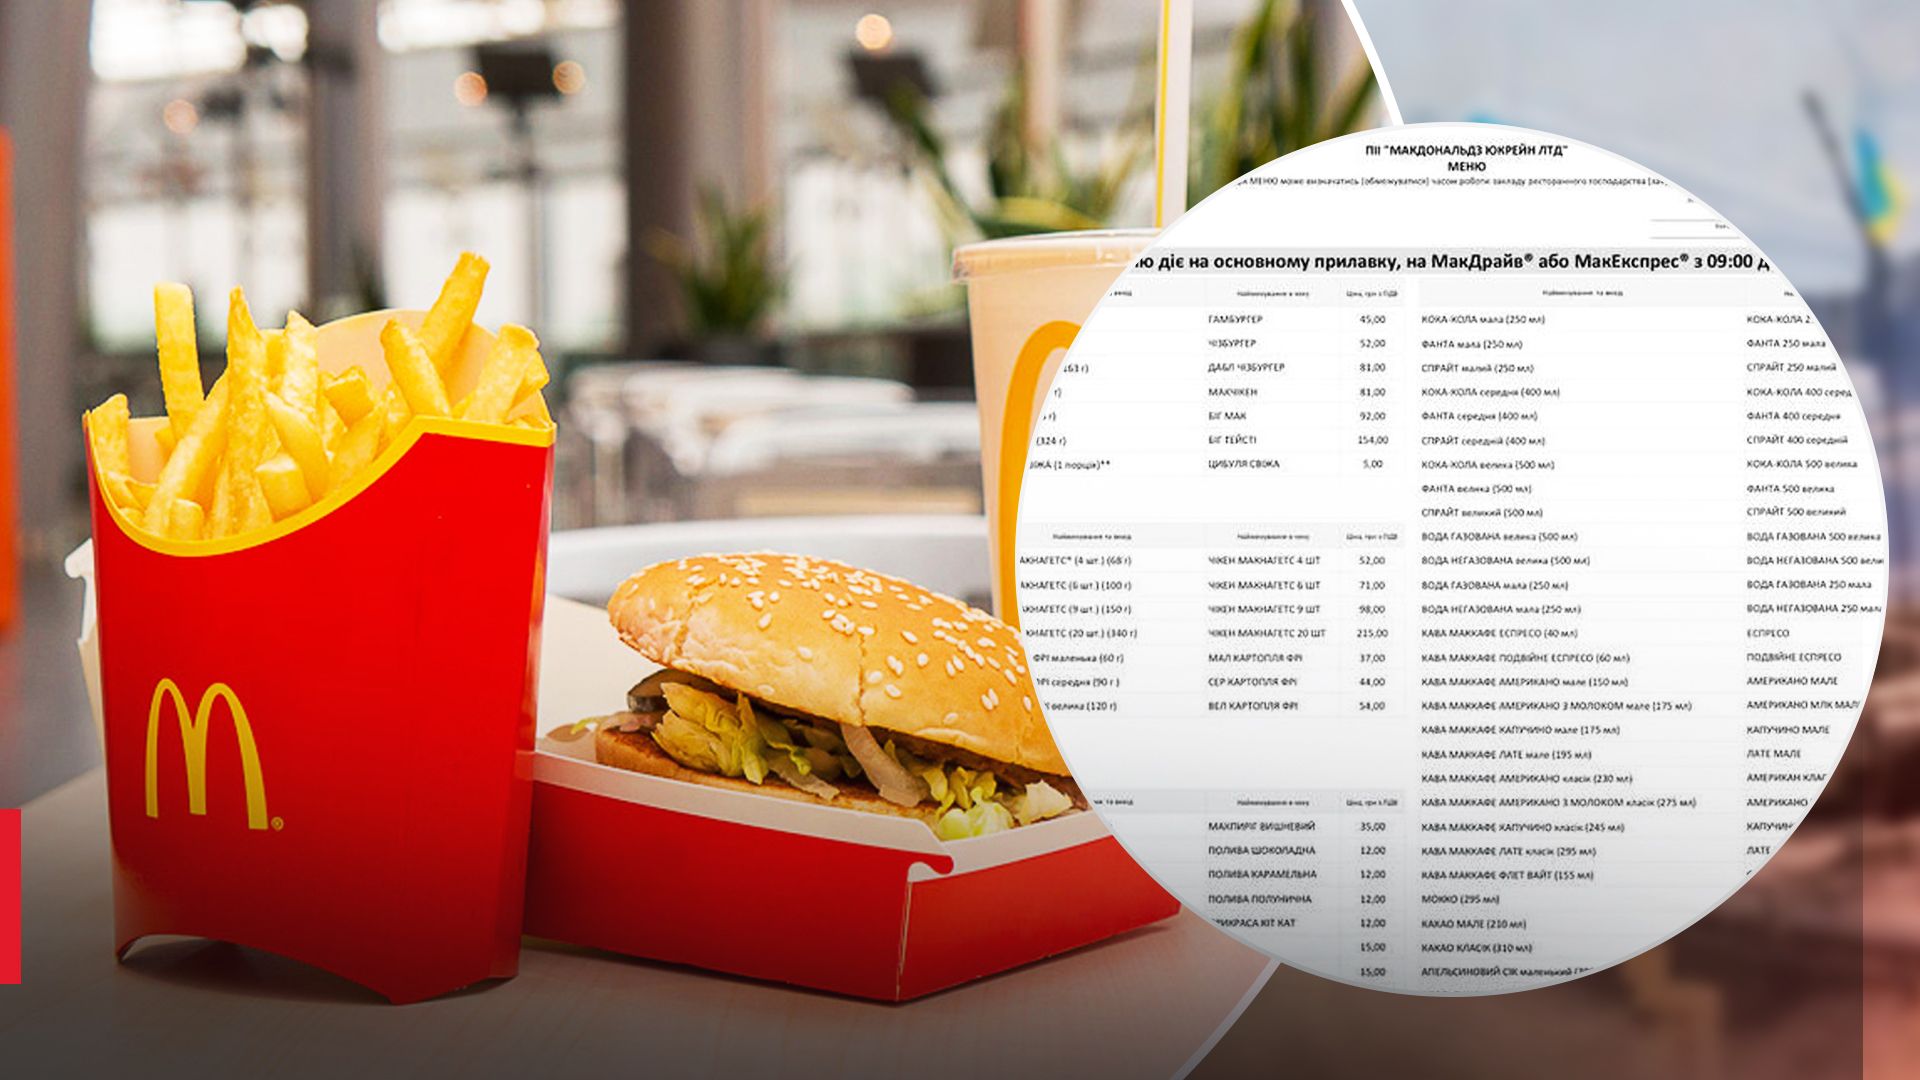 Обновлены цены на меню McDonald's